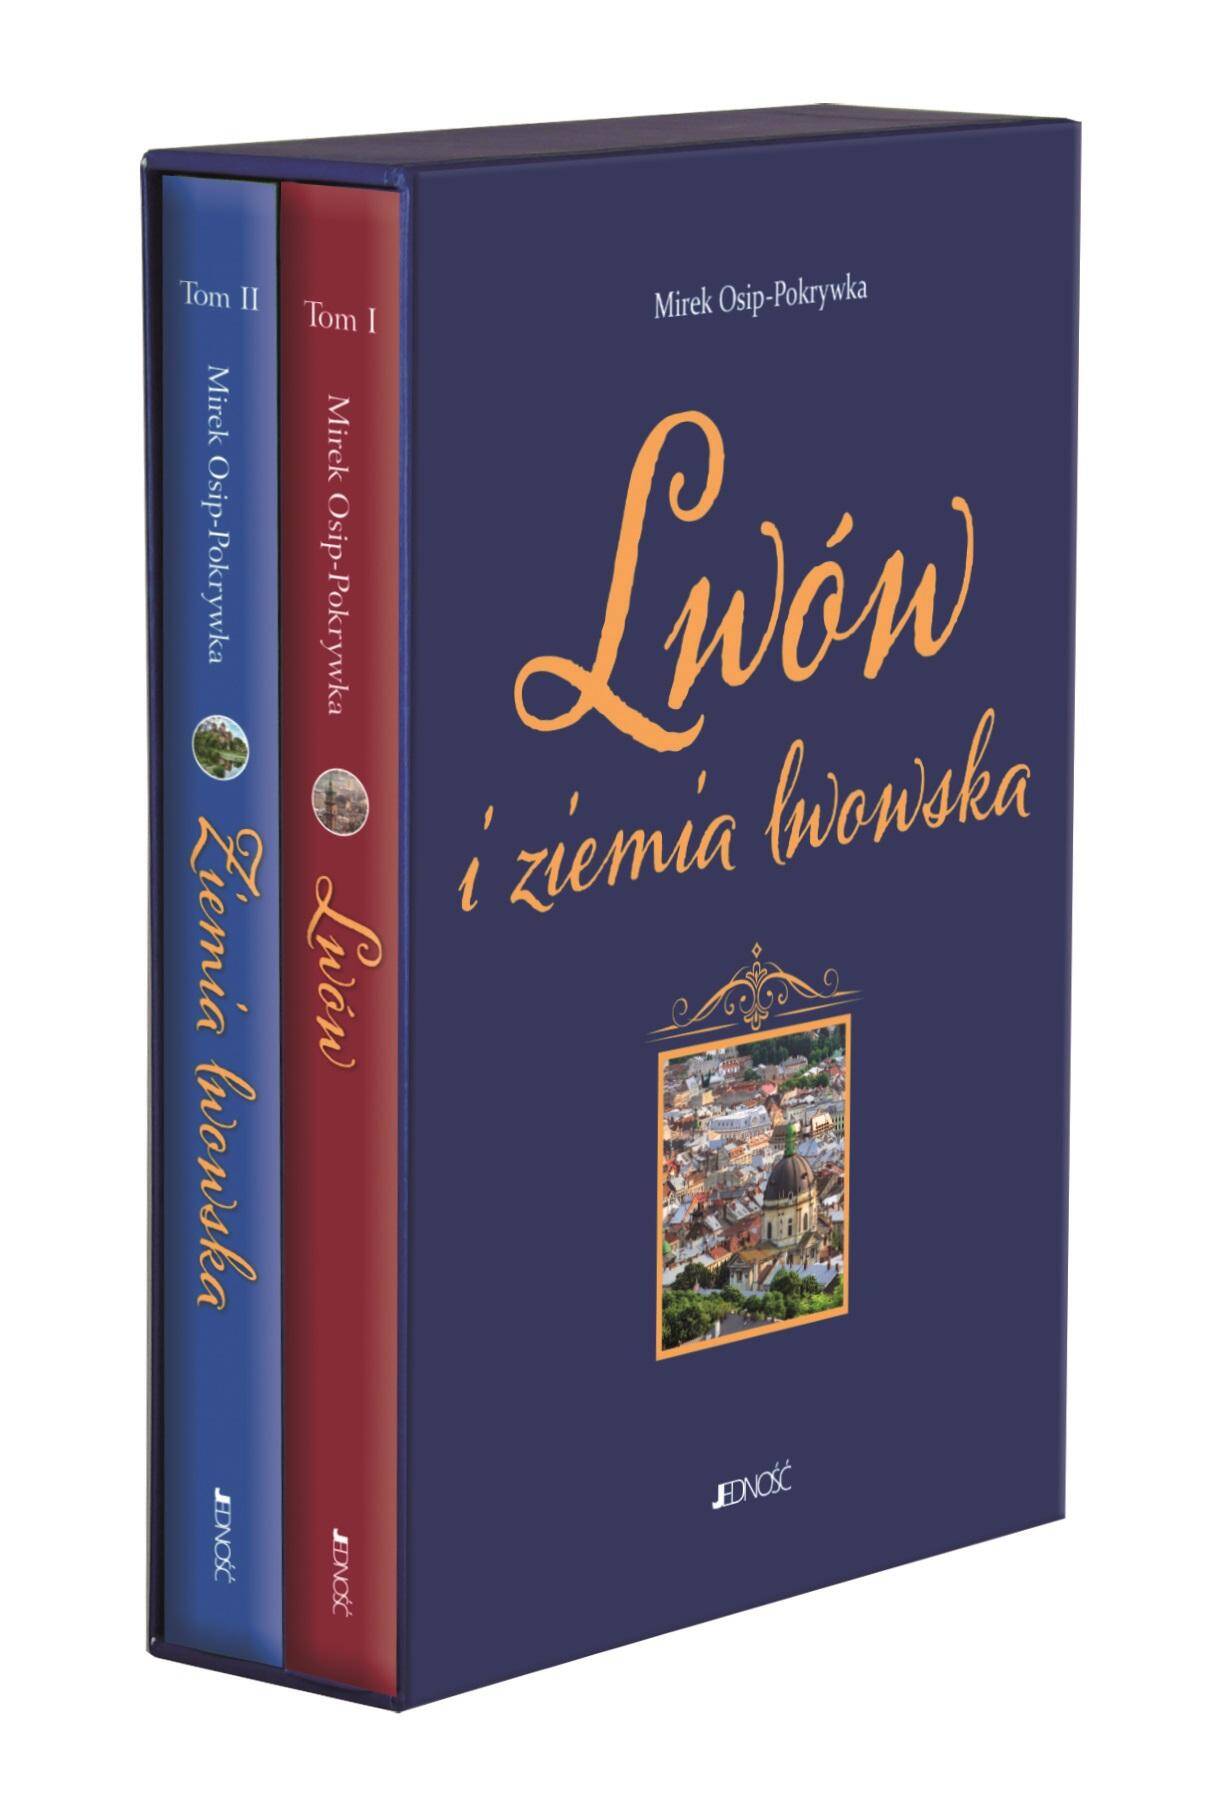 Pakiet Lwów i ziemia lwowska